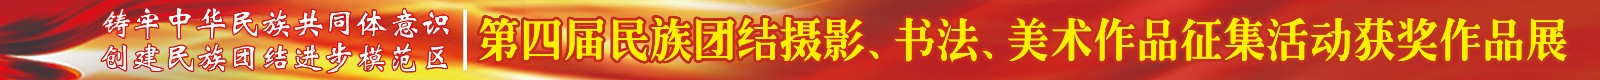 铸牢中华民族共同体意识 创建民族团结进步模范区"获奖作品展